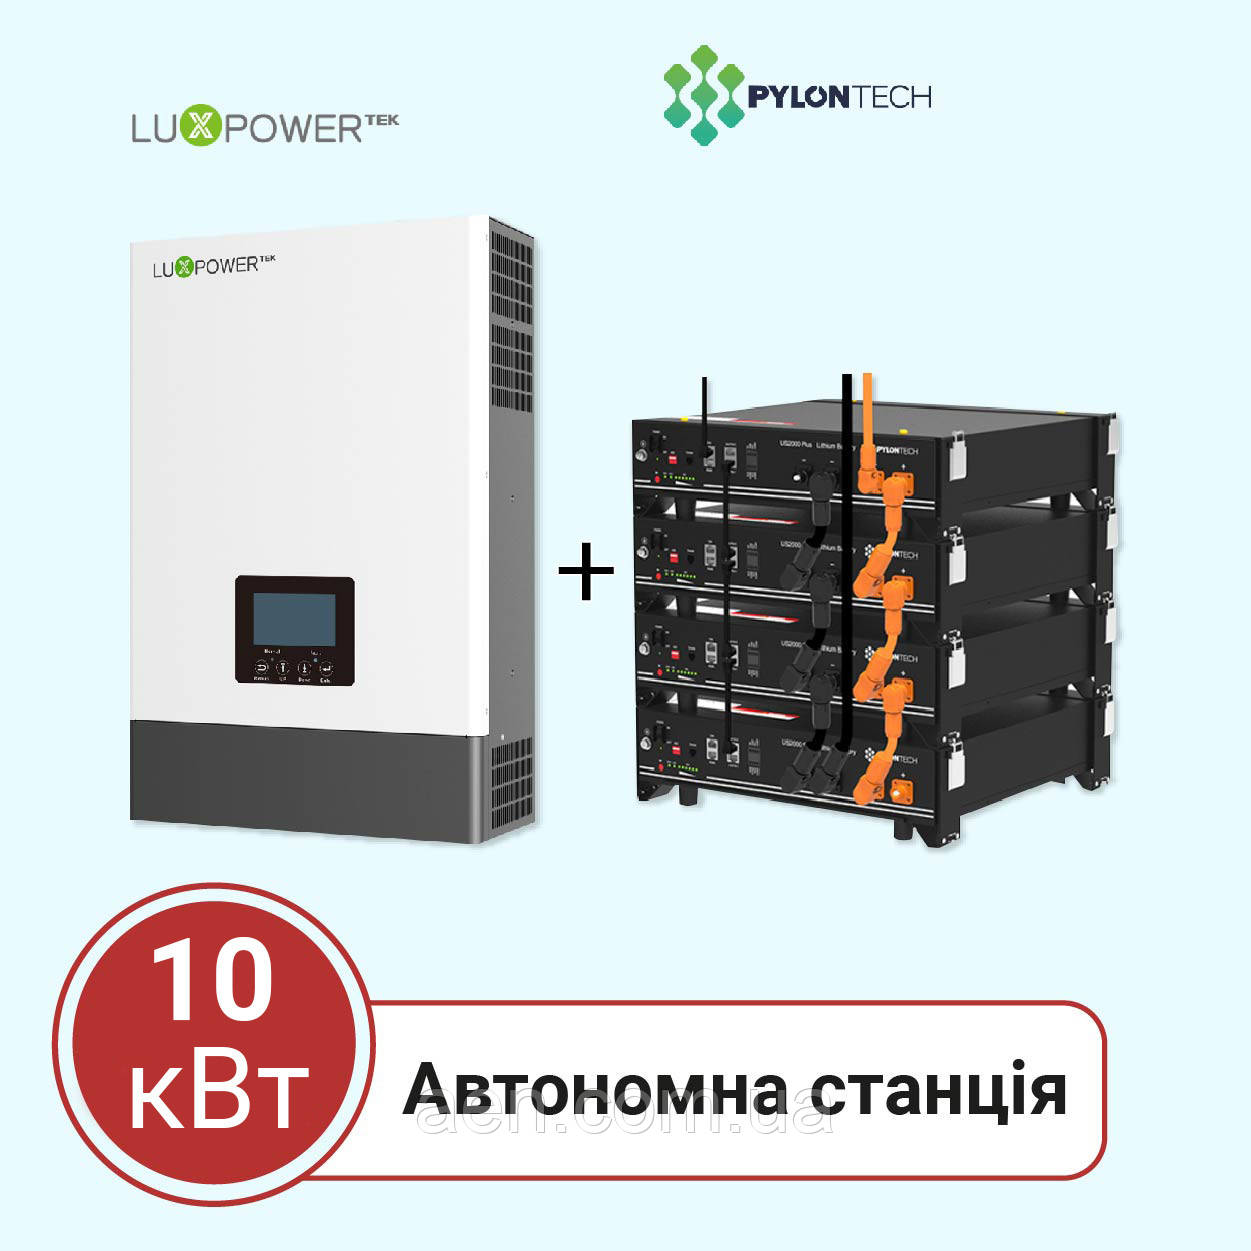 Автономна станція 10 кВт на LuxPower + Pylontech